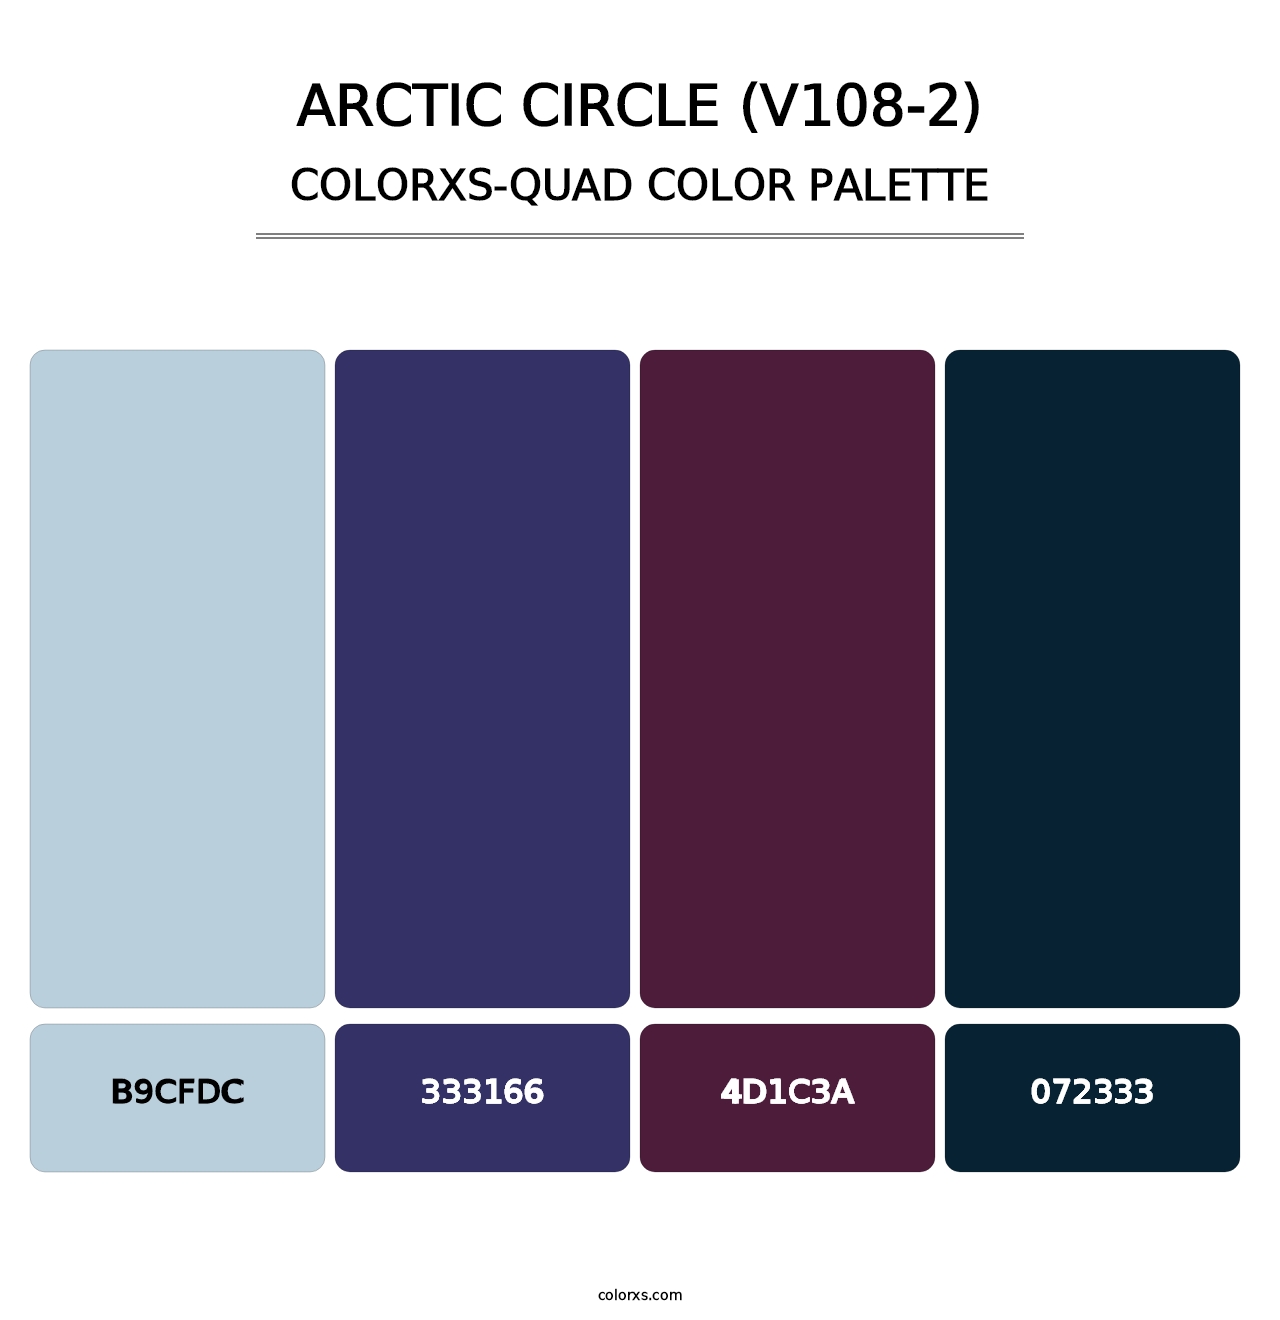 Arctic Circle (V108-2) - Colorxs Quad Palette